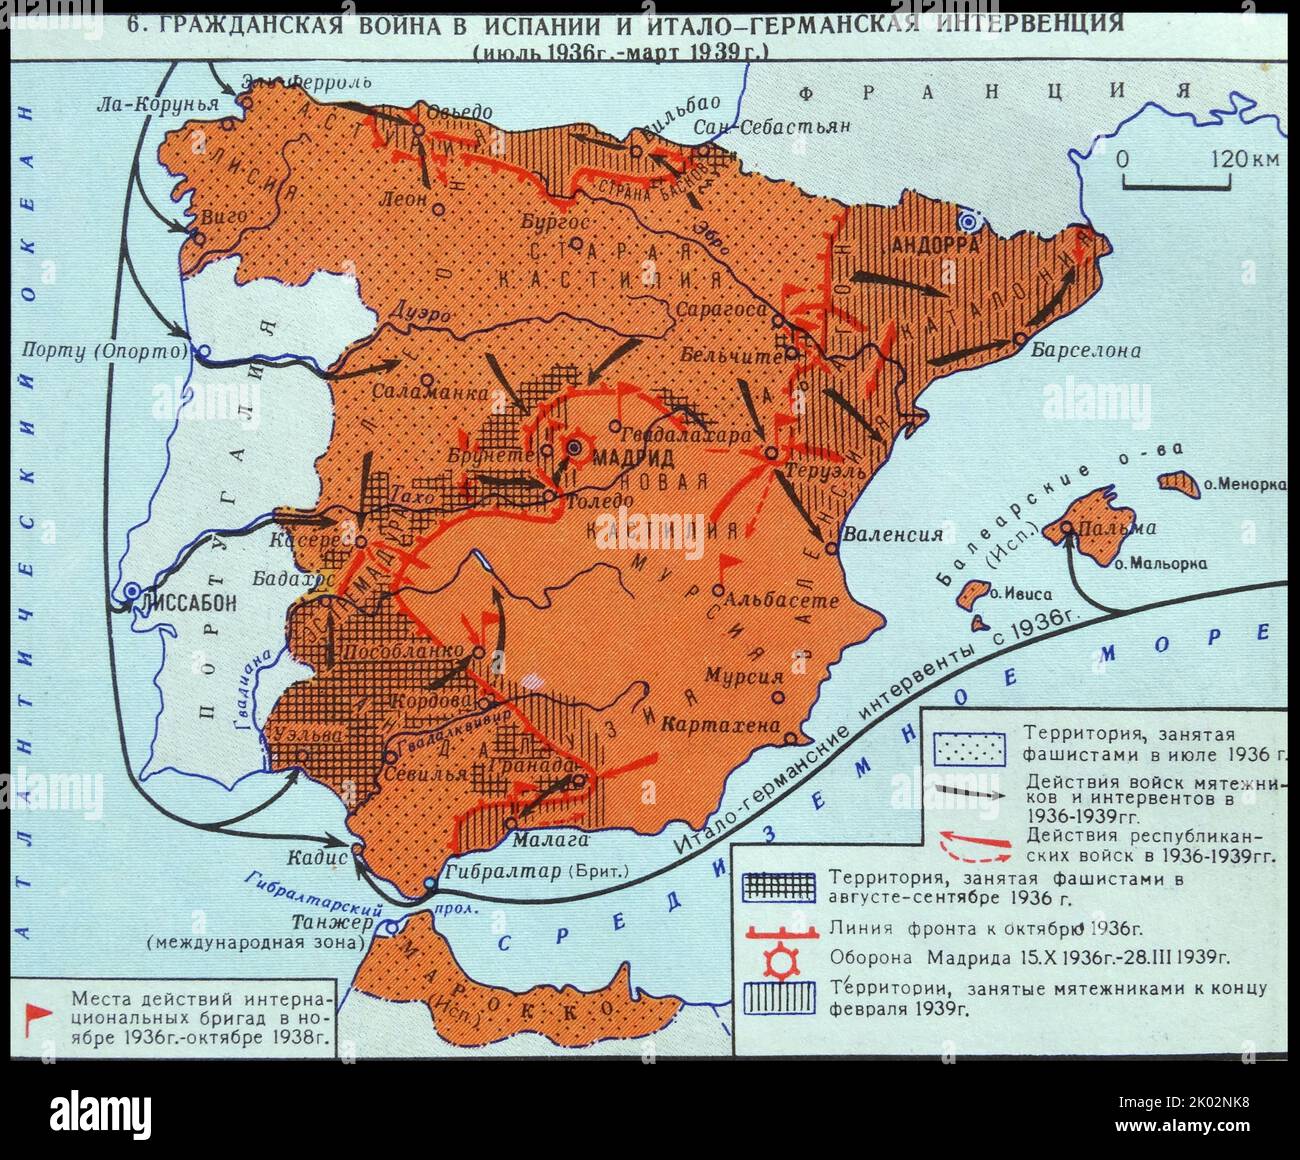 Guerra civile in Spagna e l'intervento italo-tedesco. (Luglio 1936 - marzo 1939). Foto Stock